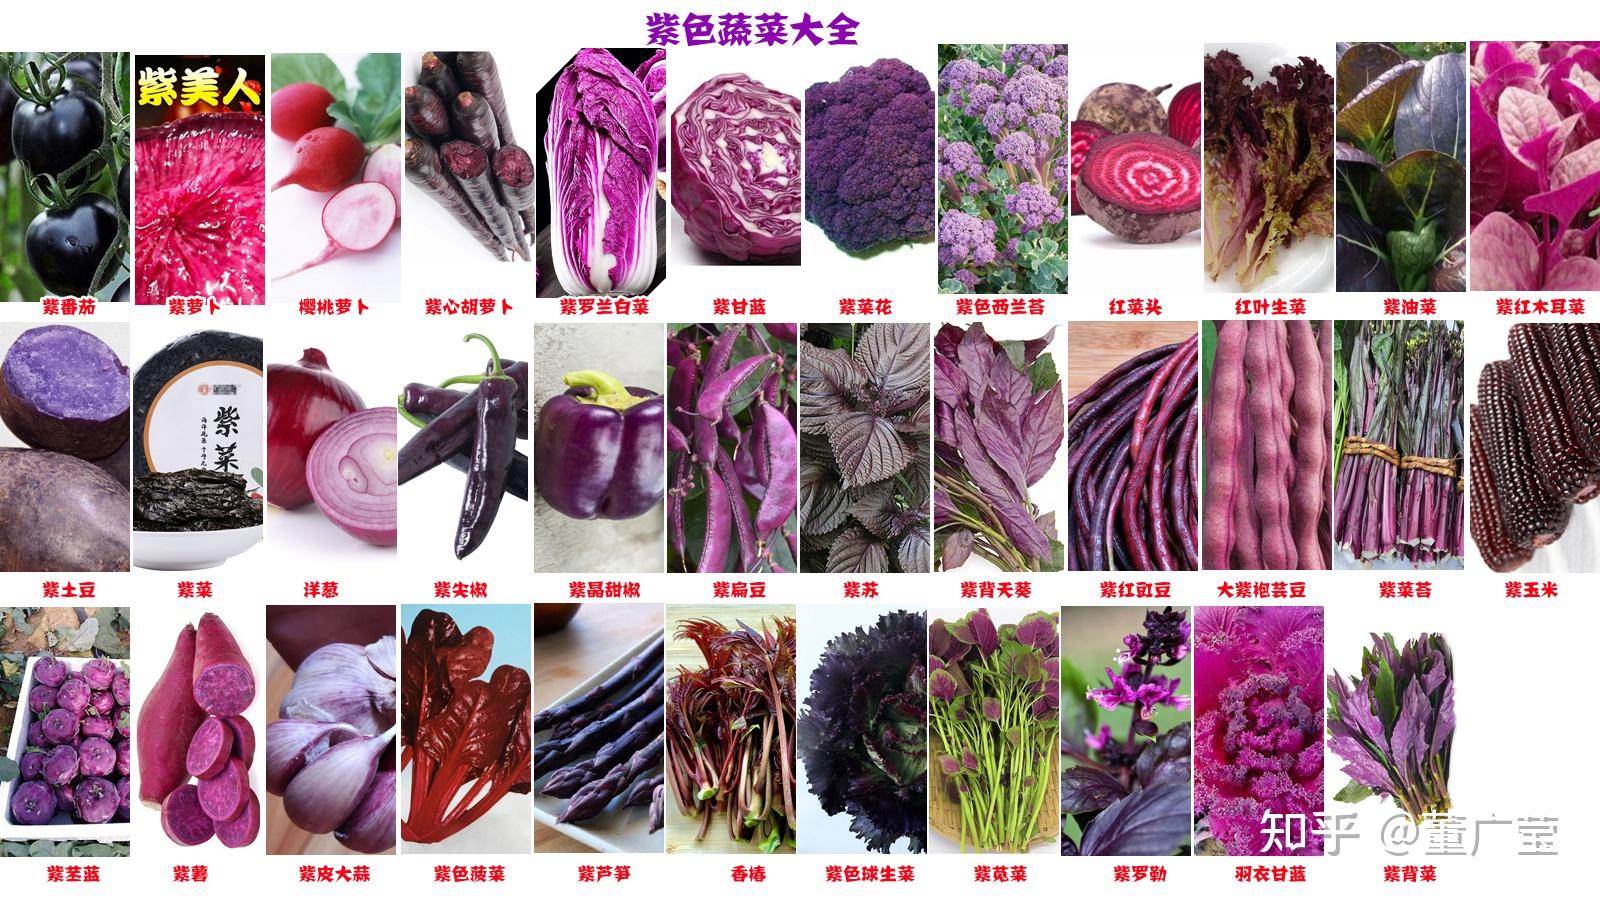 还不知道这35种紫色蔬菜你太亏了富含花青素营养又美味赶紧选几种趁着